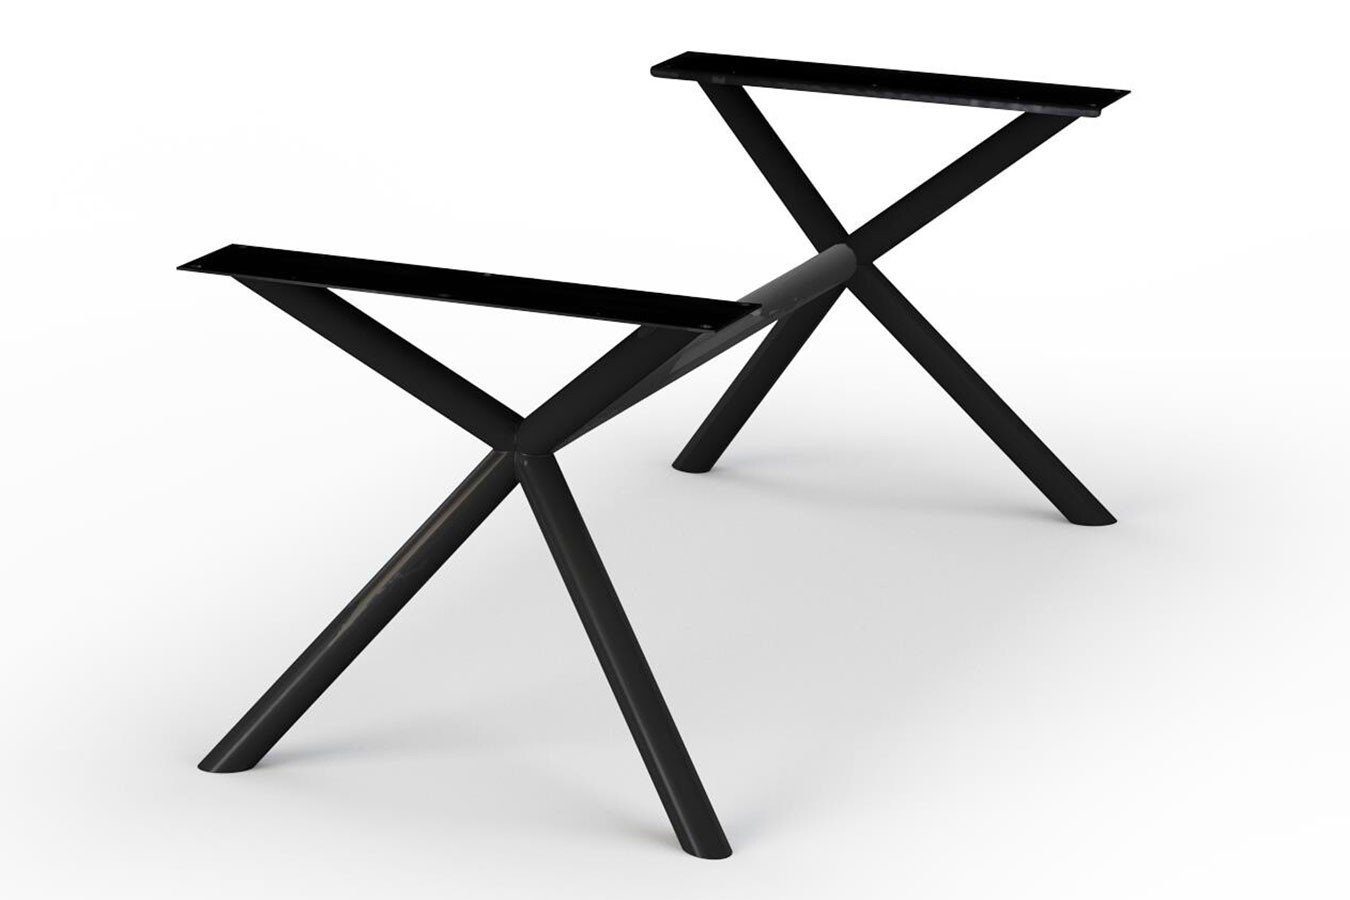 Tischbein Nora daslagerhaus schwarz Tischgestell living X-Form